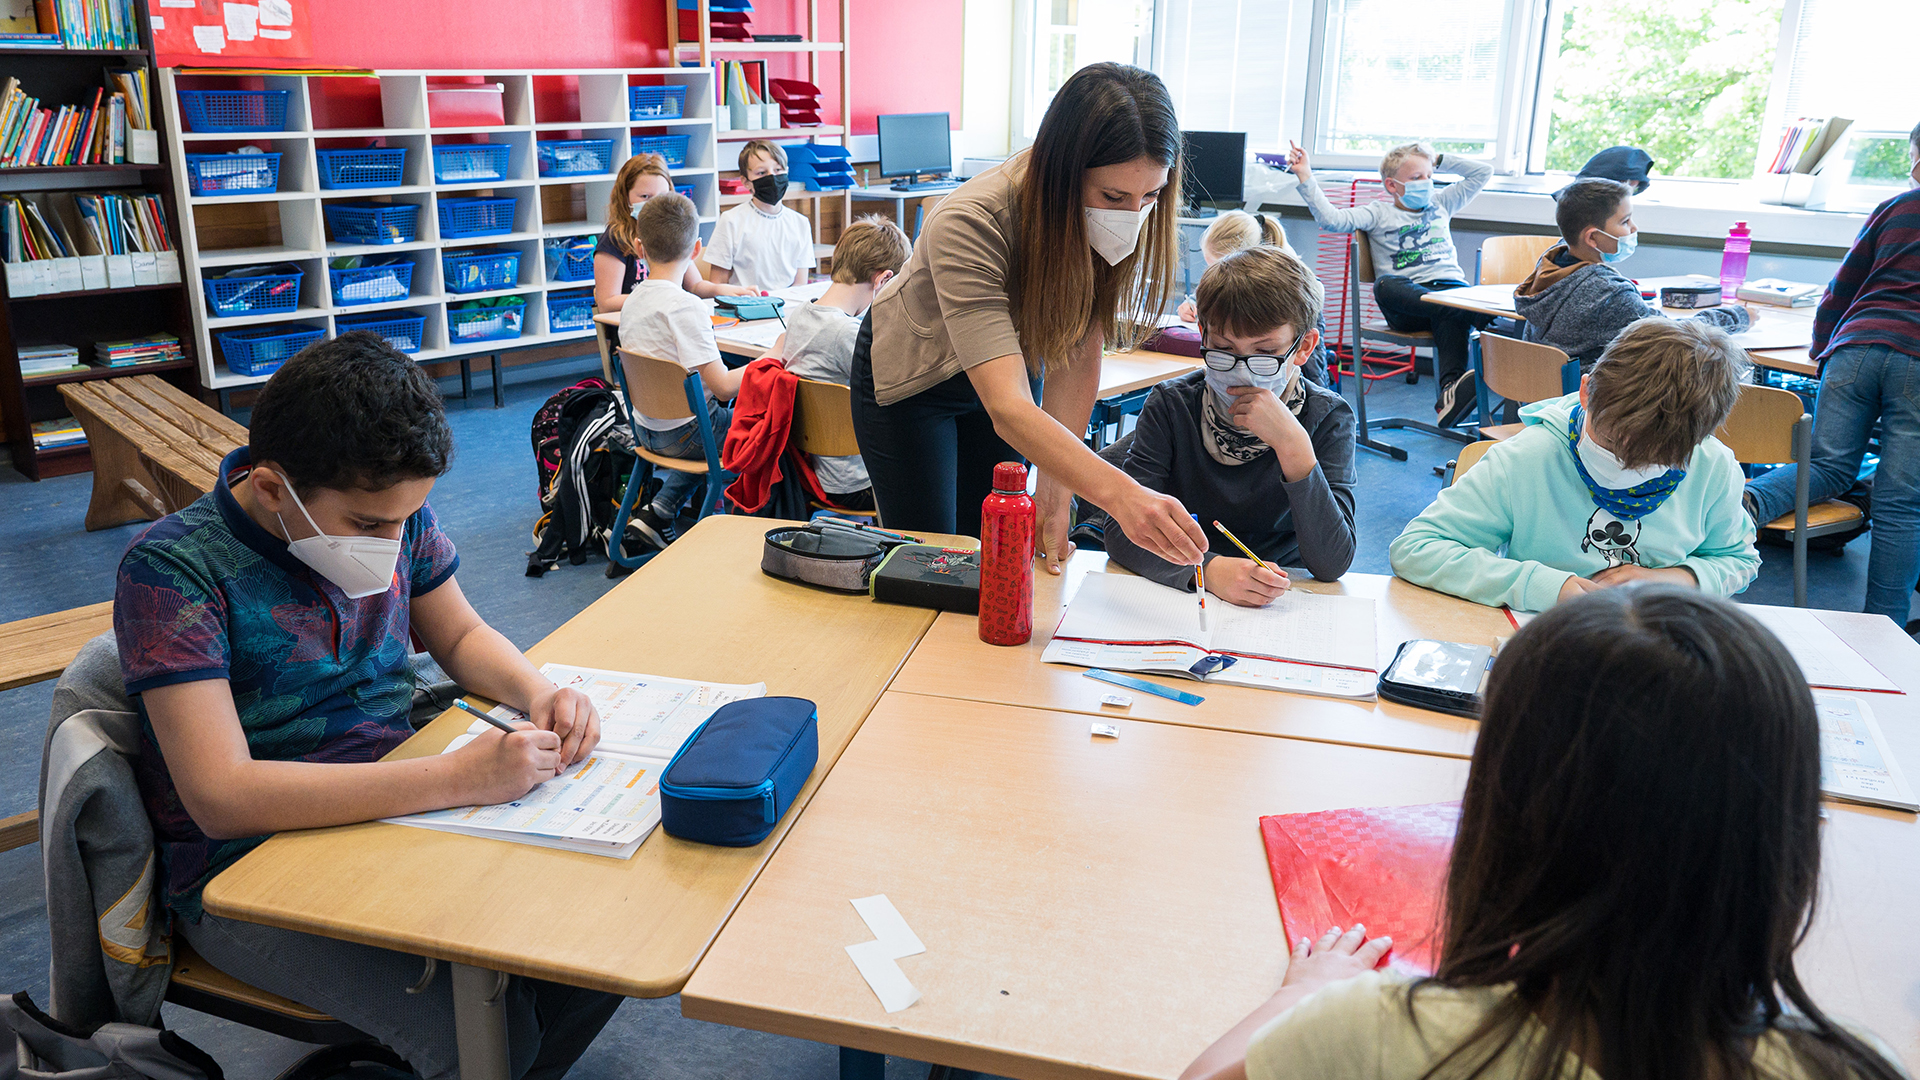 Eine Klassenlehrerin mit Schülerinnen und Schülern im Klassenzimmer - alle tragen einen Mund-Nasen-Schutz. | picture alliance/dpa